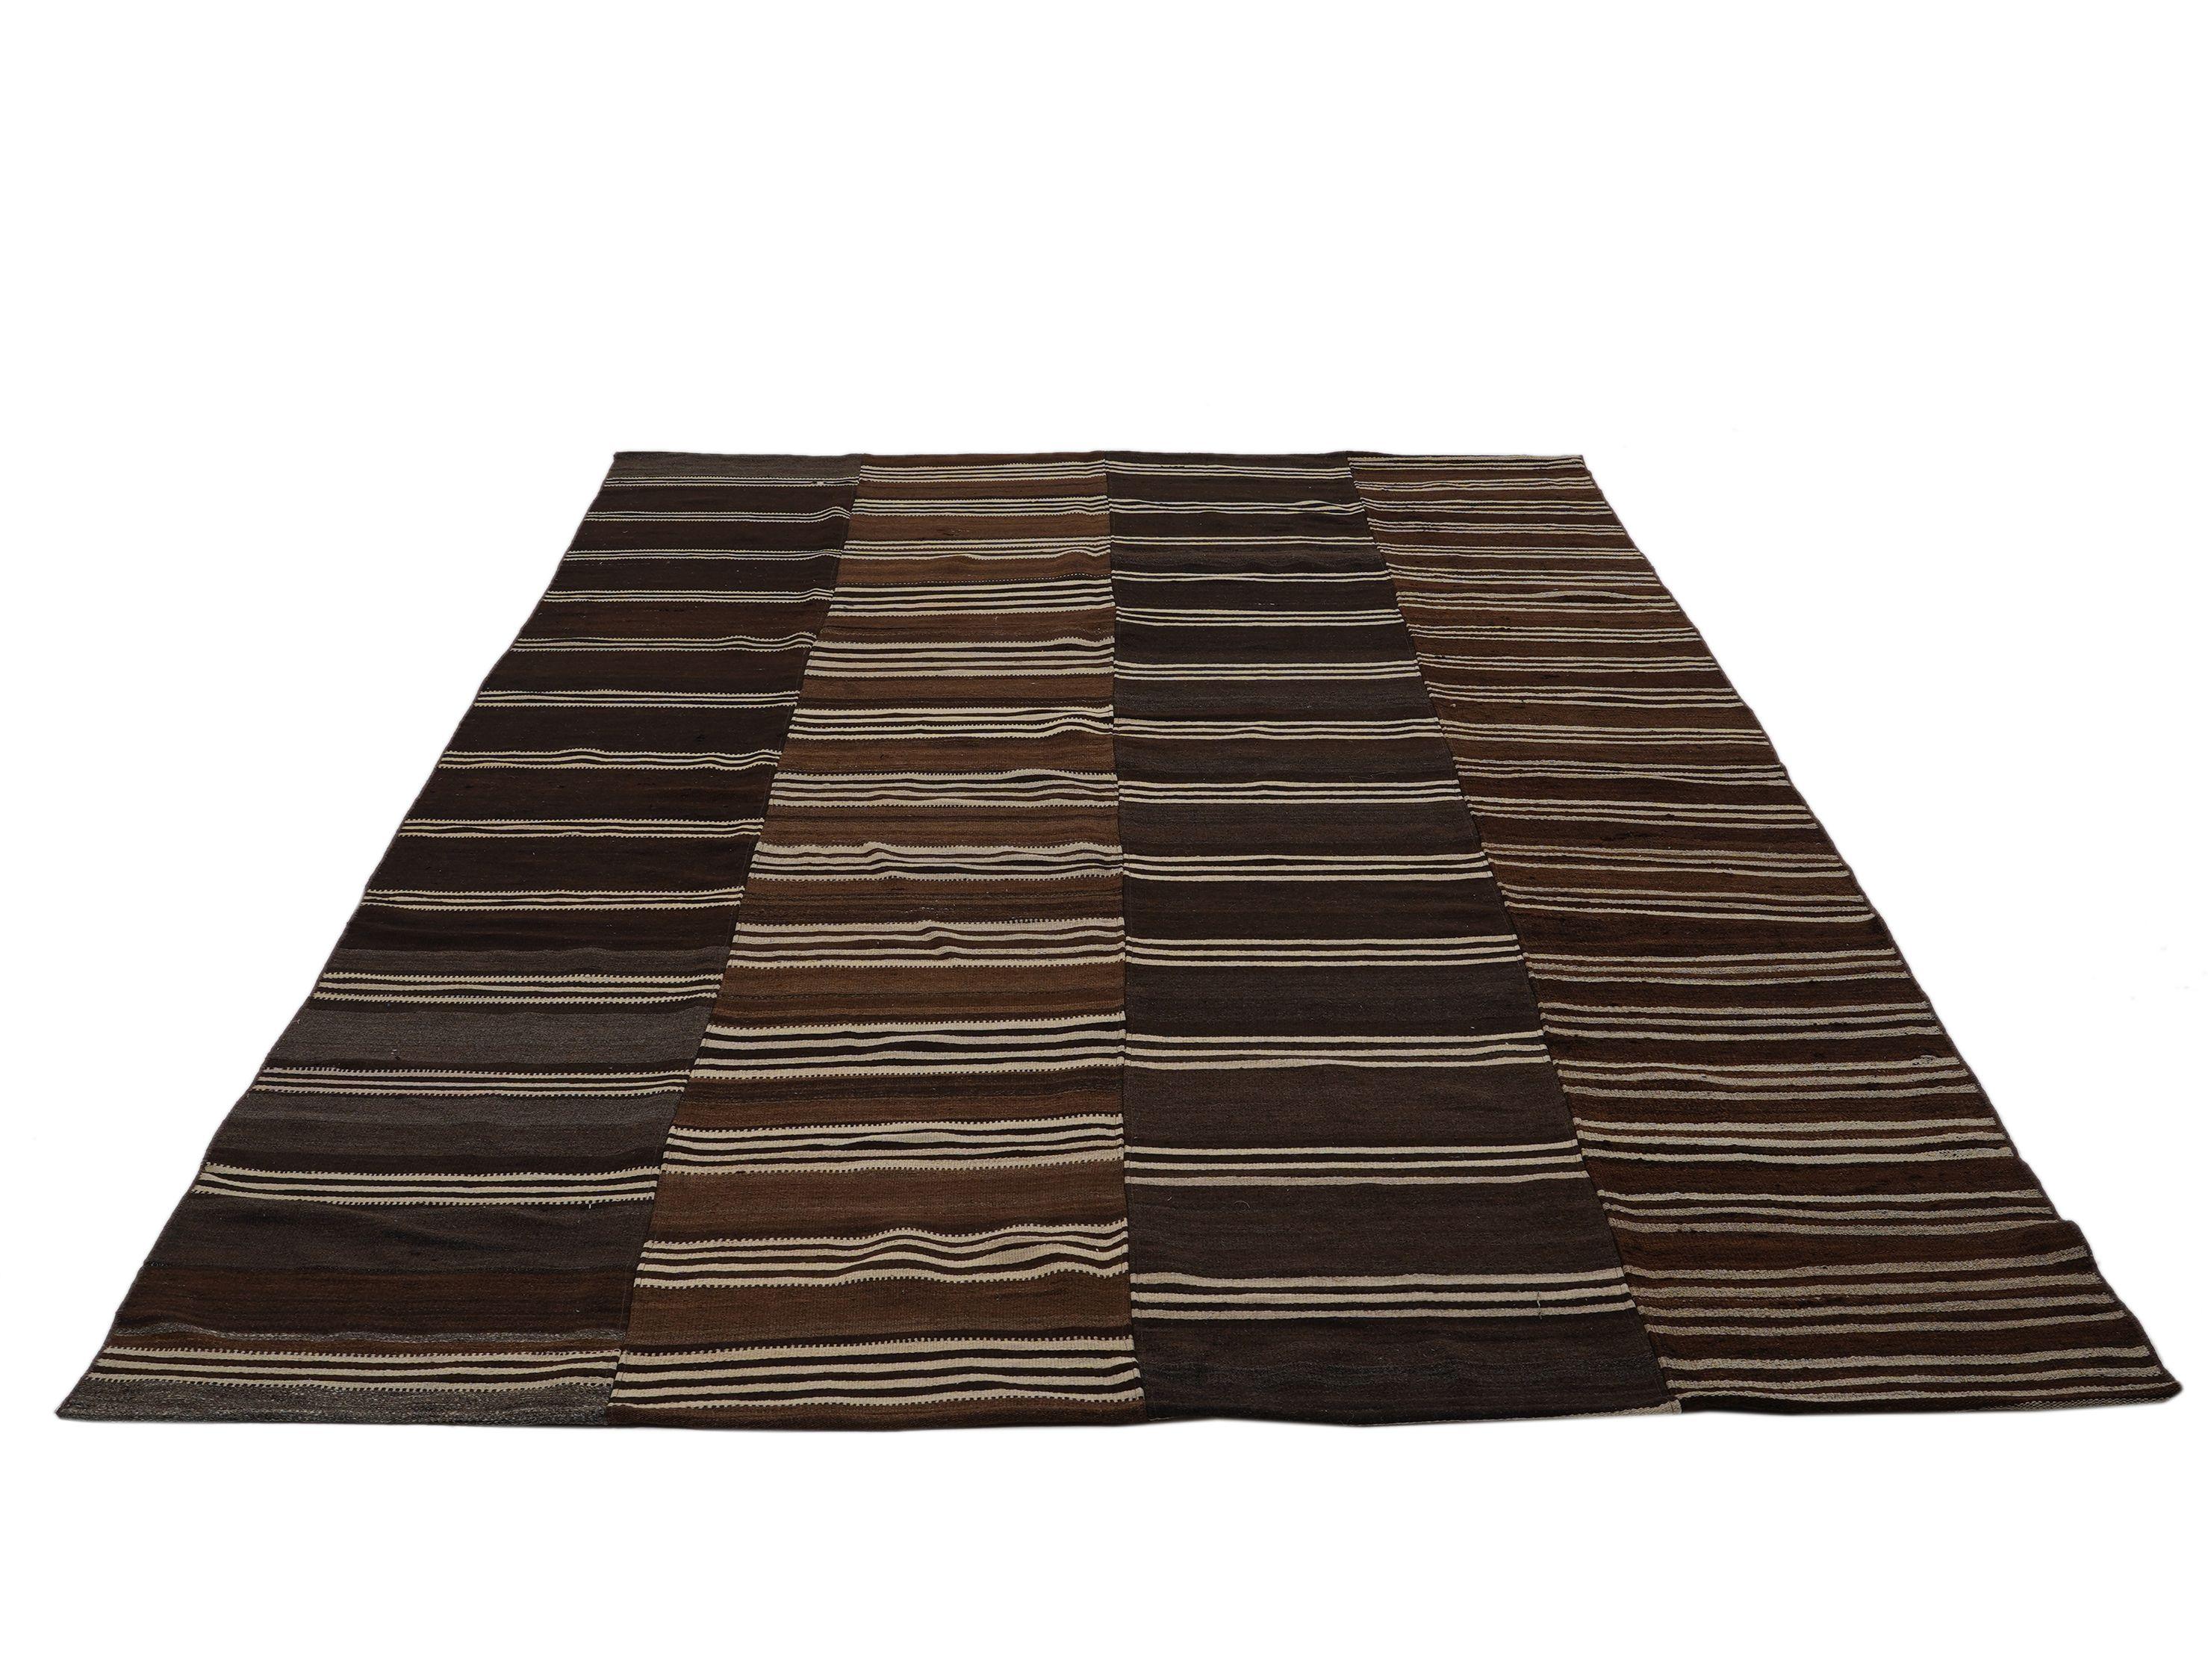 Dieser von erfahrenen Webern in der Türkei handgefertigte Teppich in satten erdigen Brauntönen ist zeitlos und modern zugleich. 

Unsere türkischen Teppiche werden nach alten, über Generationen weitergegebenen Kunstformen hergestellt. Erfahrene